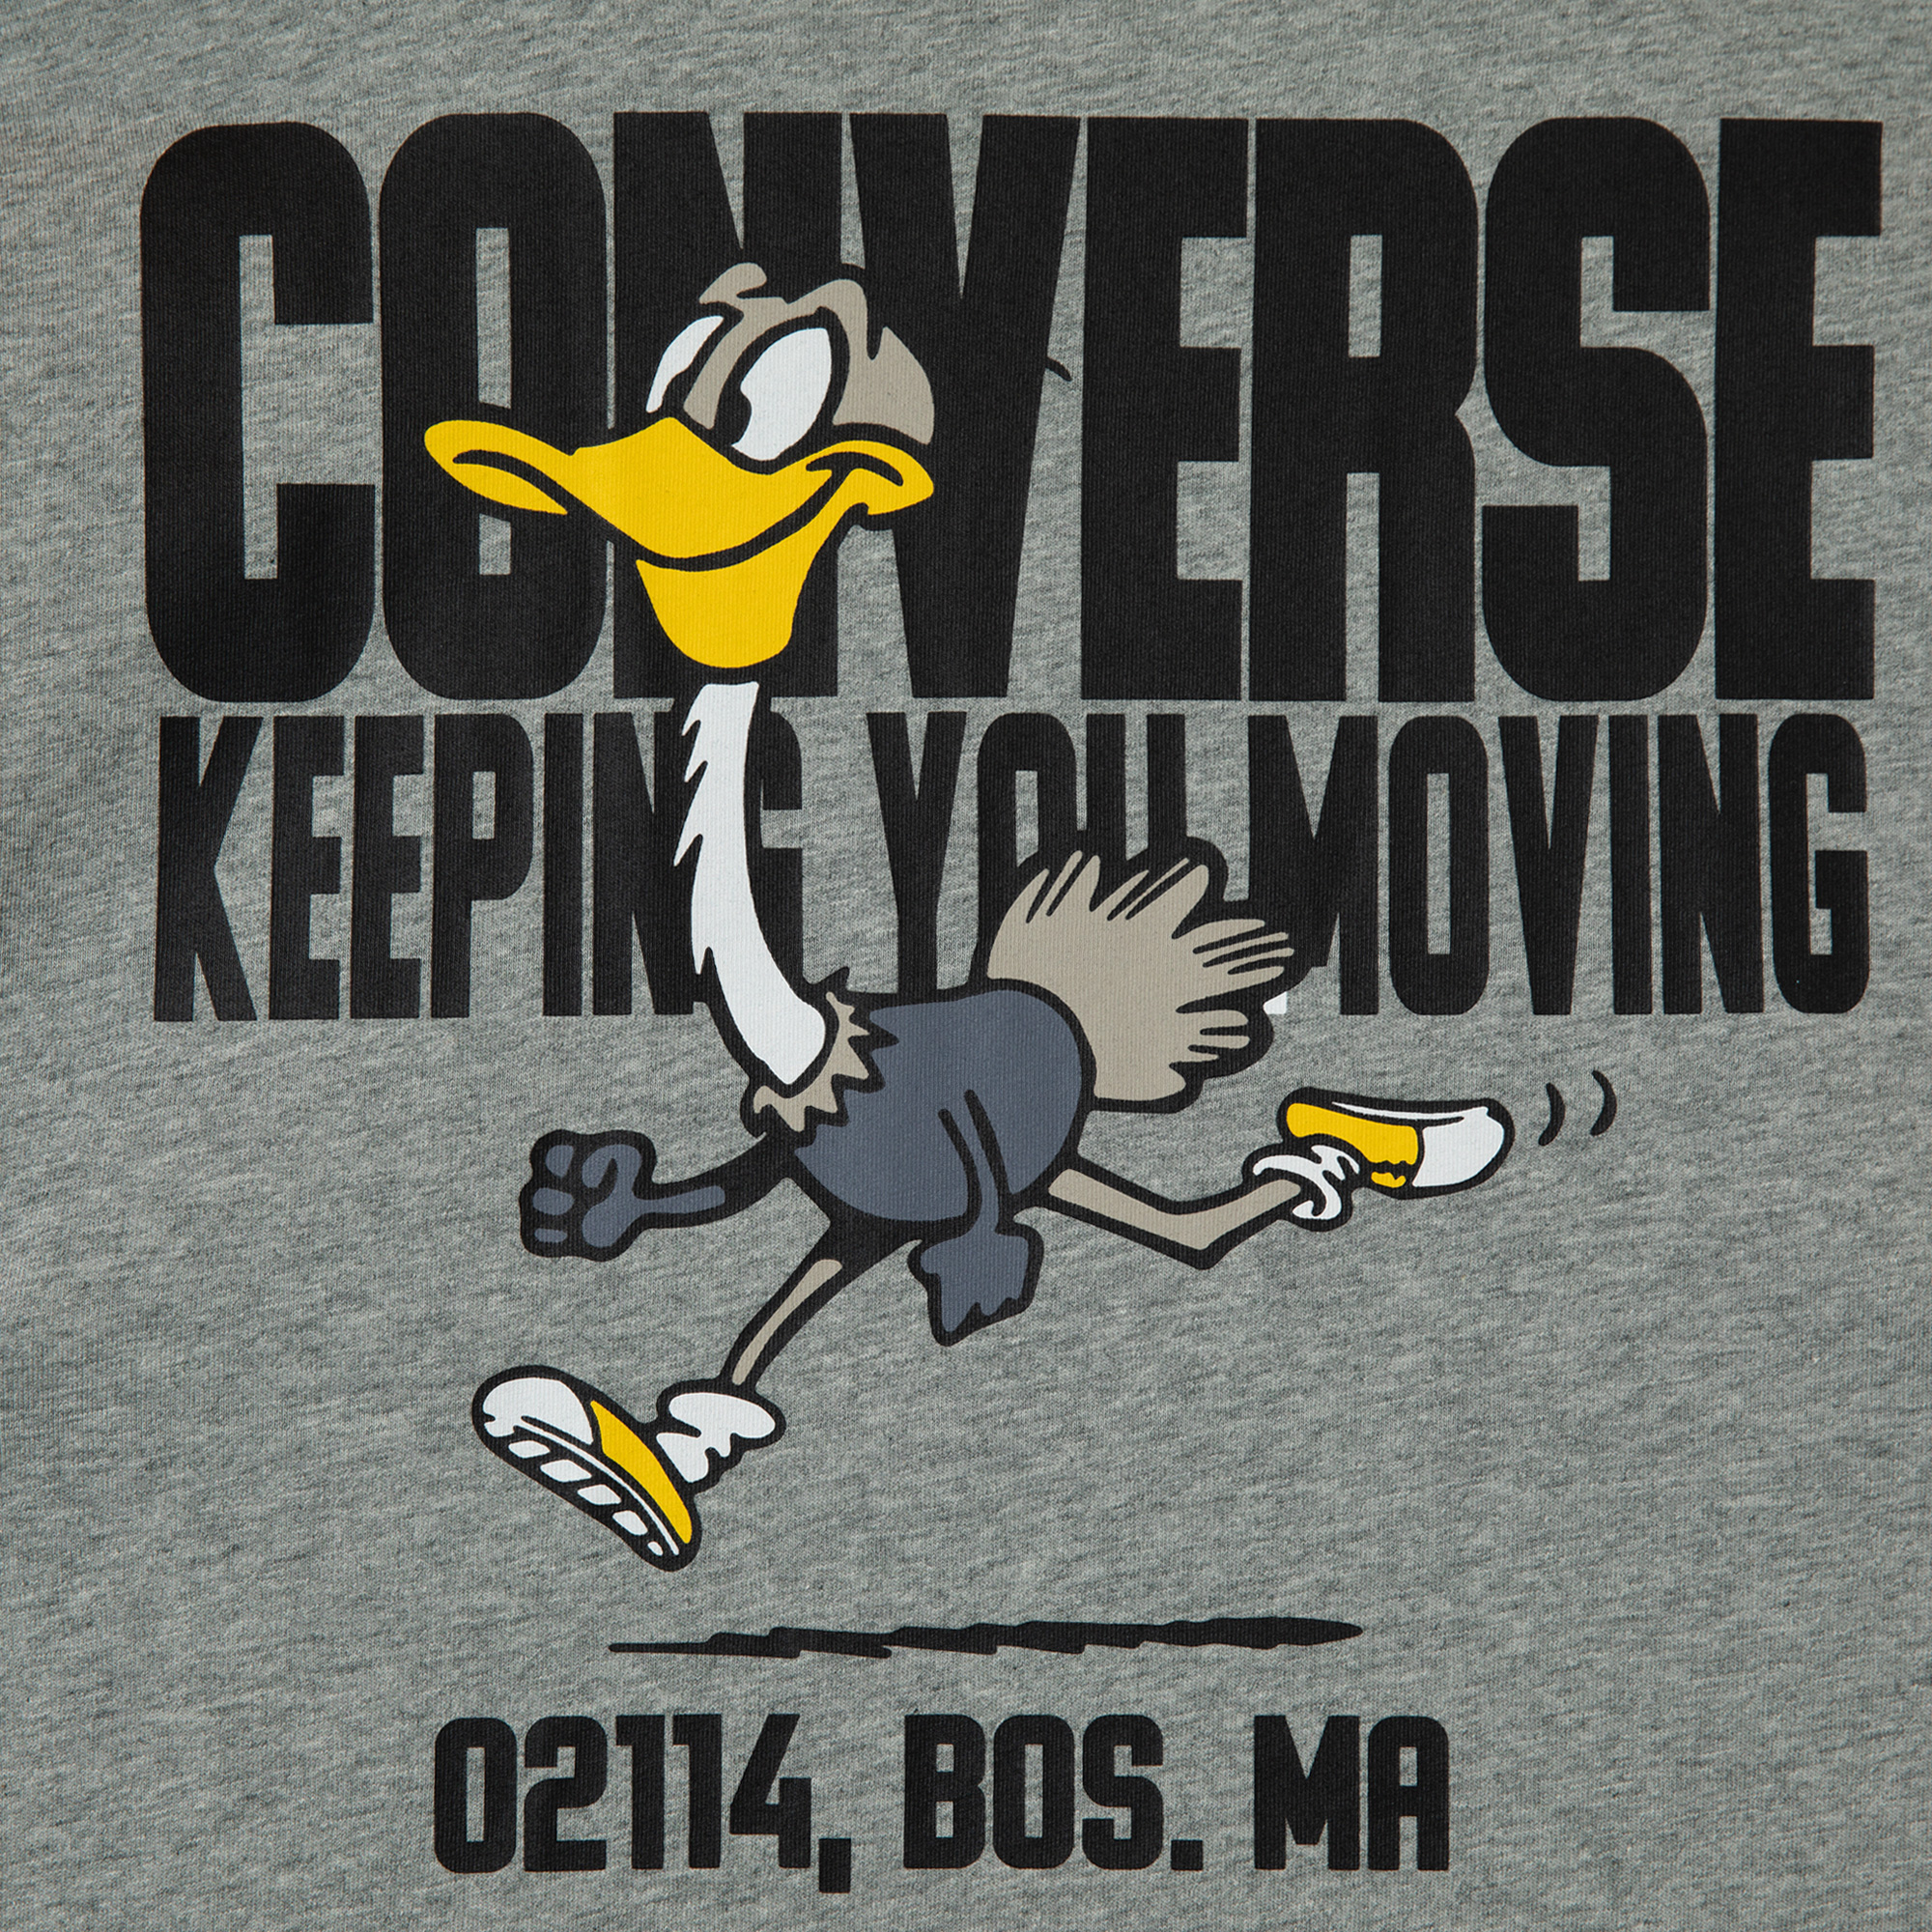  Keep Moving SS Vgh T-Shirt